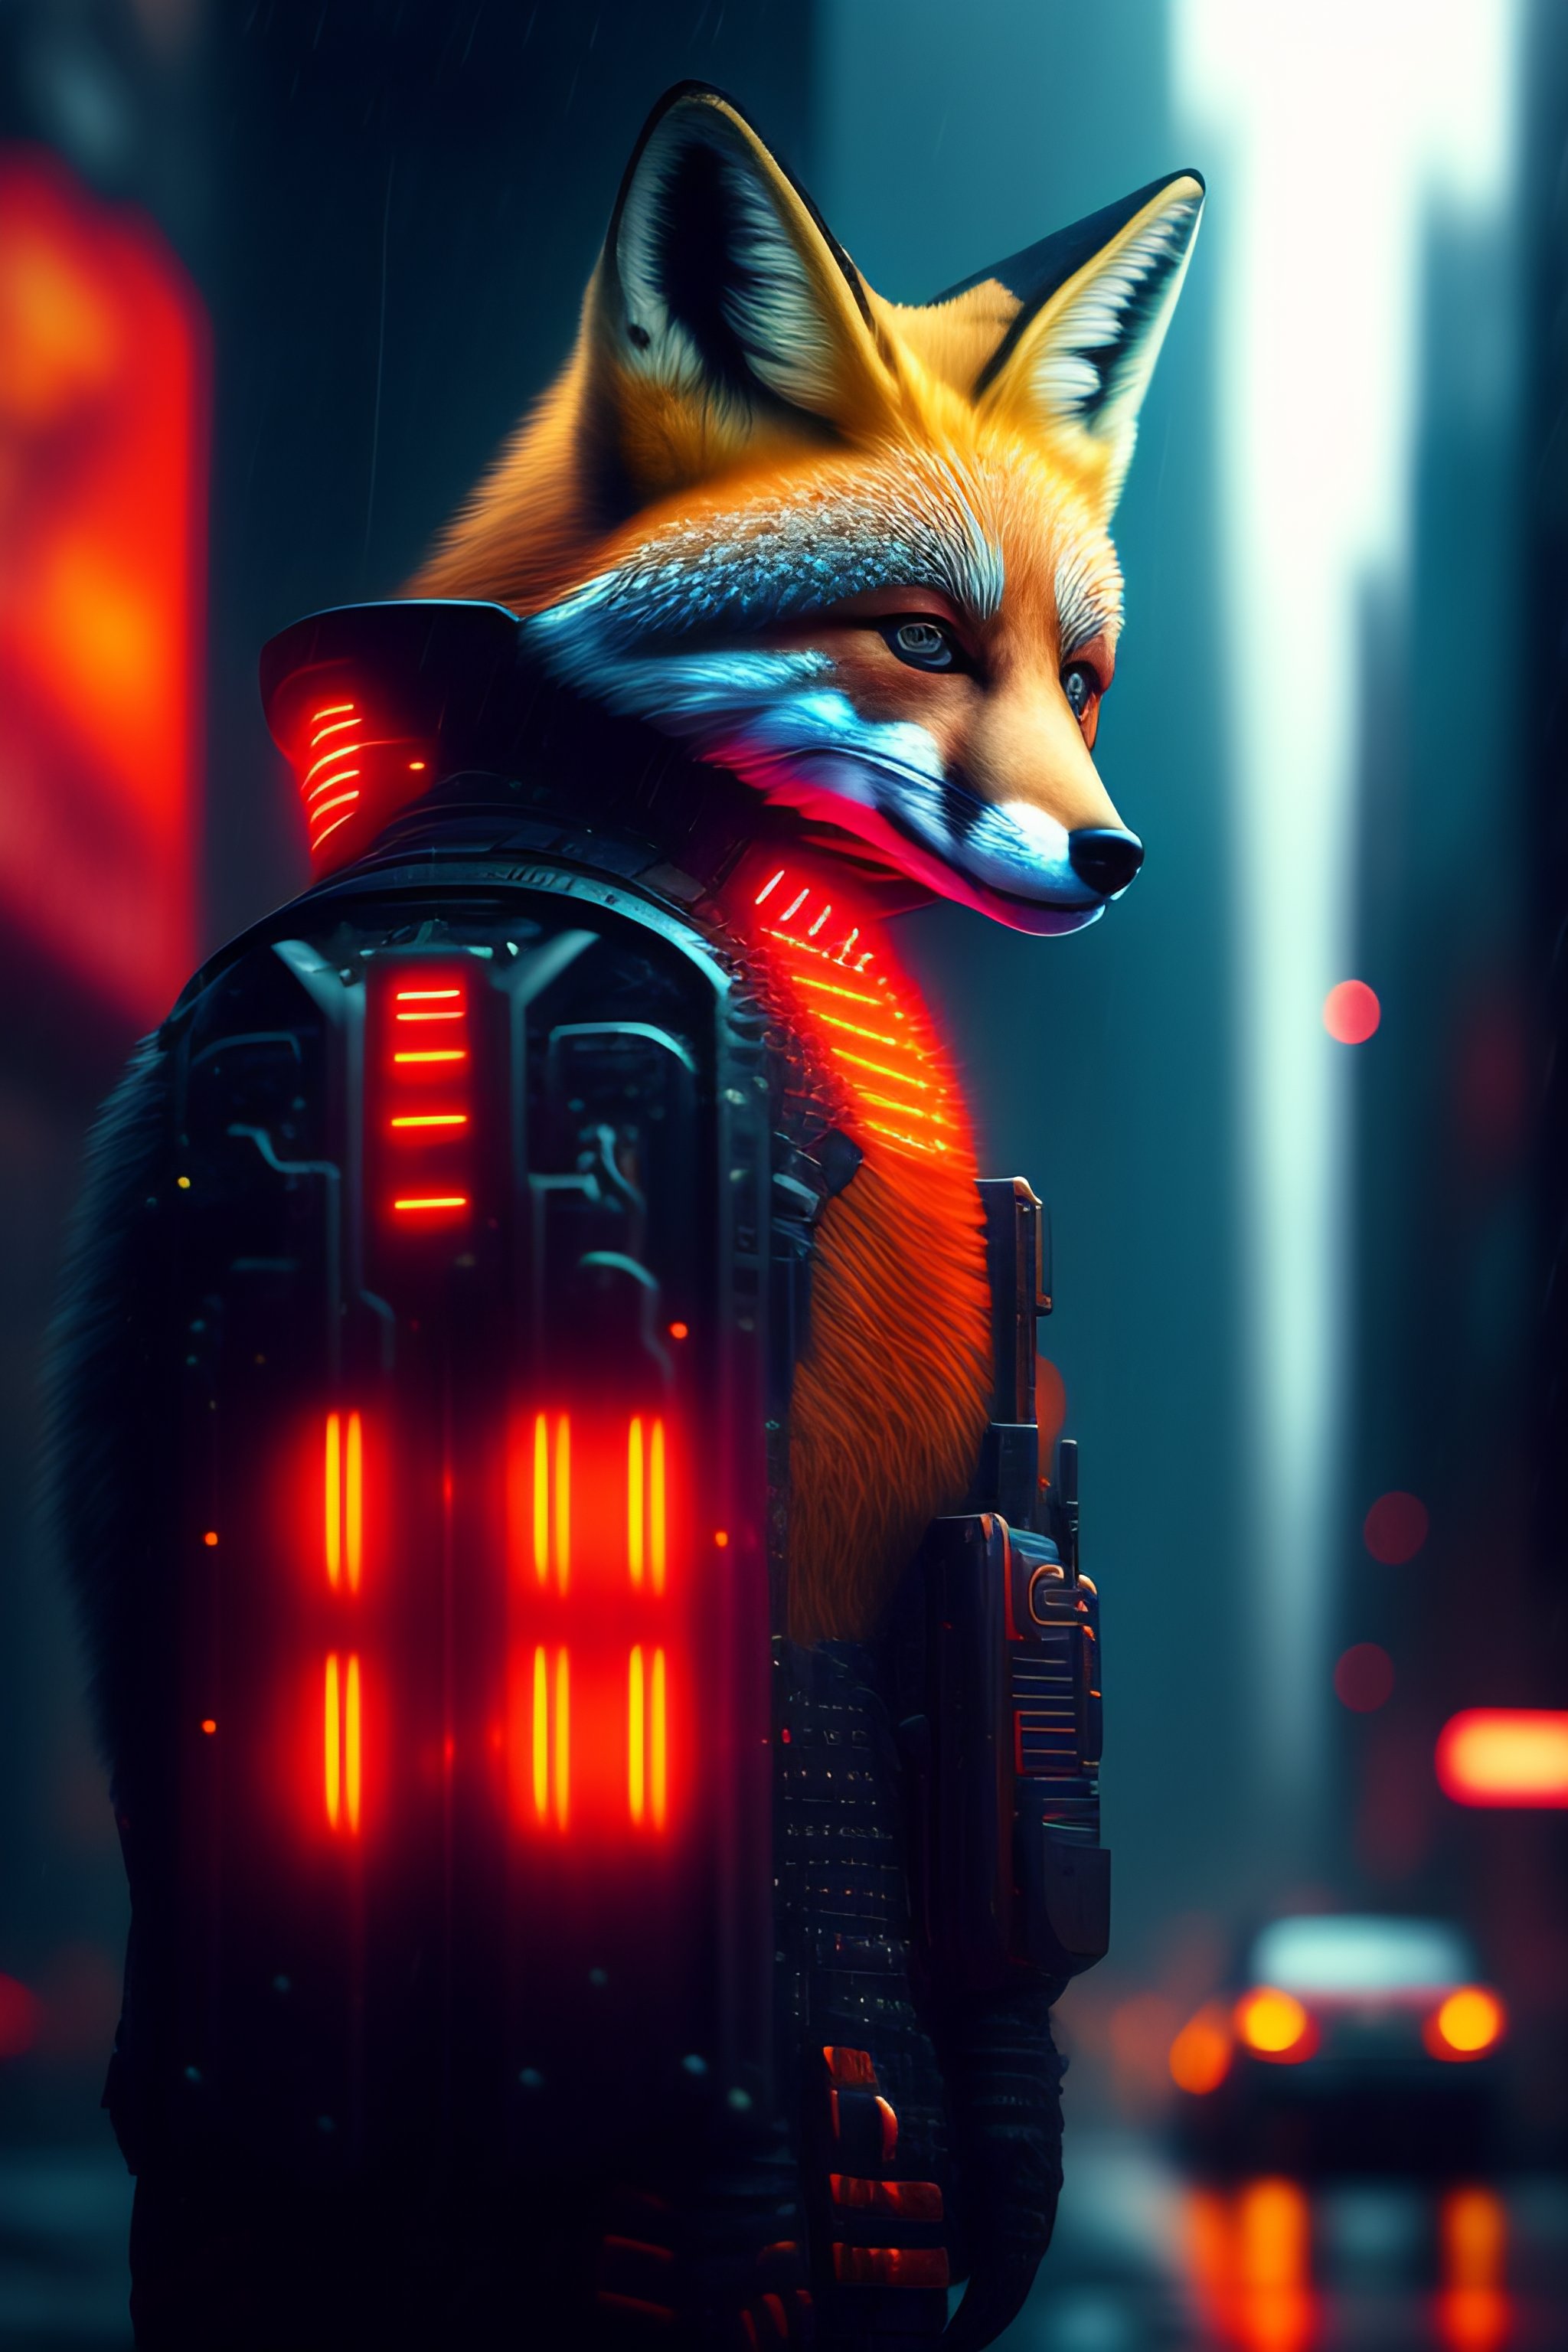 Lexica - Red fox Robot solder, Neon, Movie still, cyberpunk, photo ...